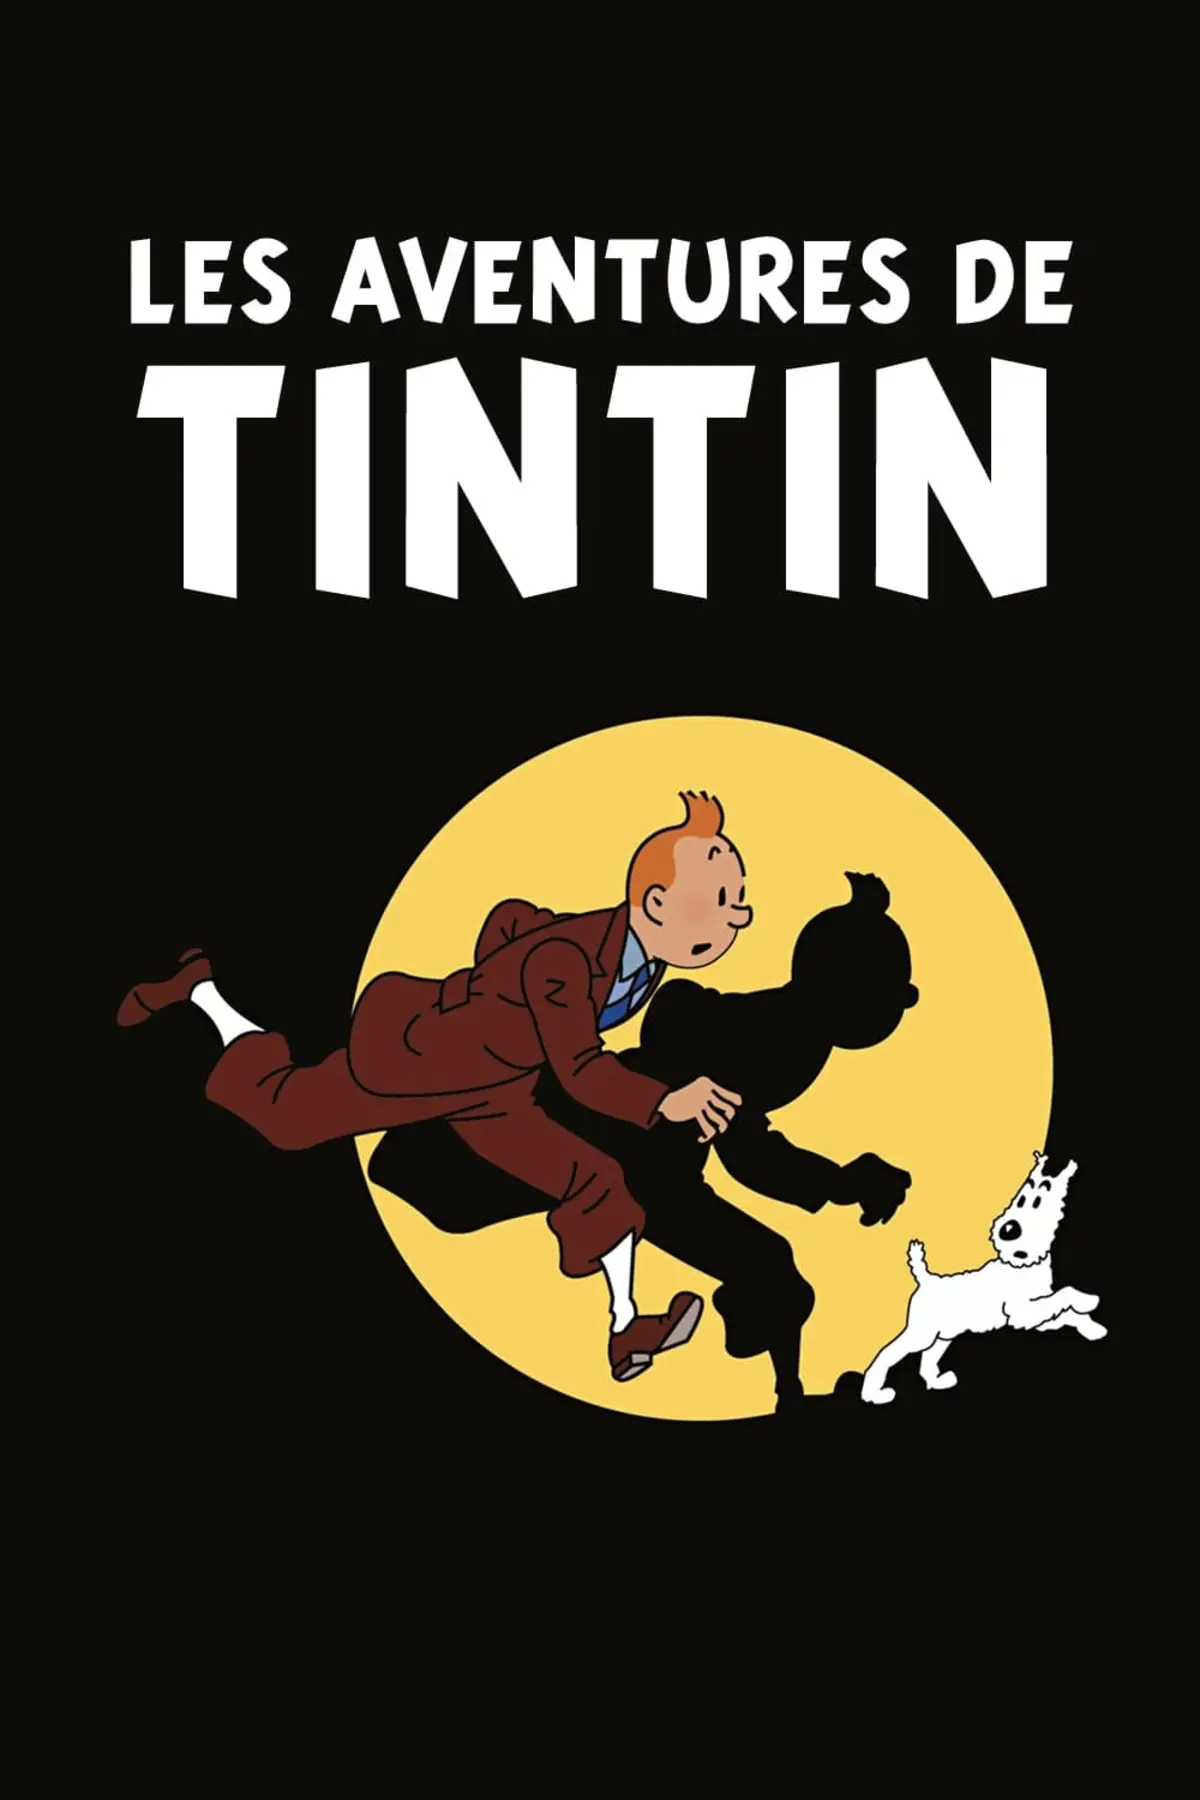 Les aventures de Tintin S03E04 Les 7 boules de cristal (2)